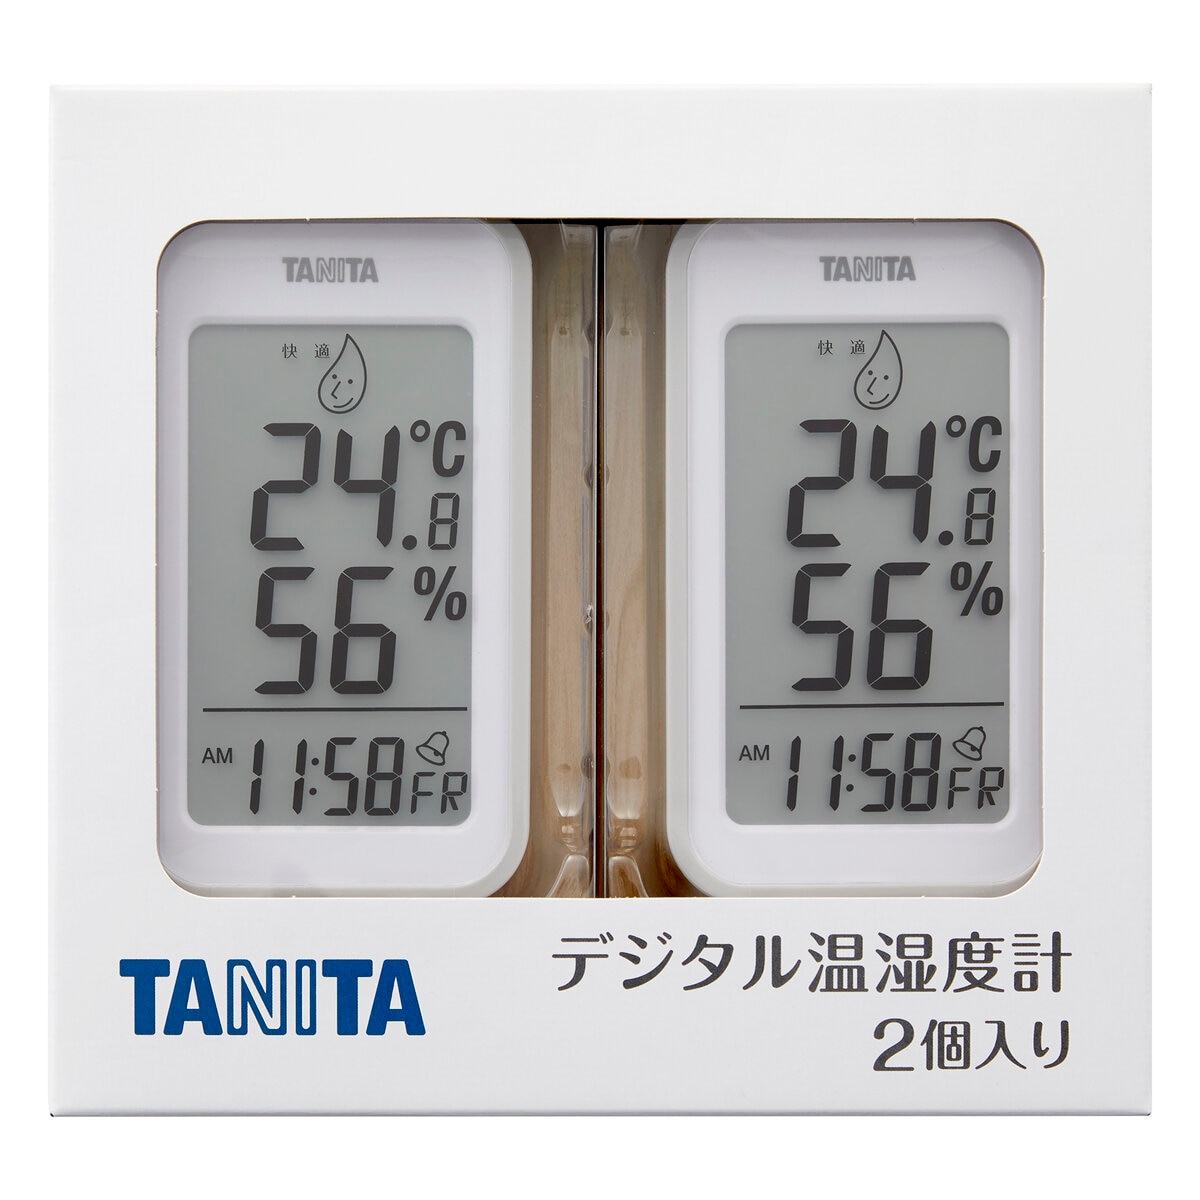 タニタ 温湿度計 TT-559G 2個組 - グレー